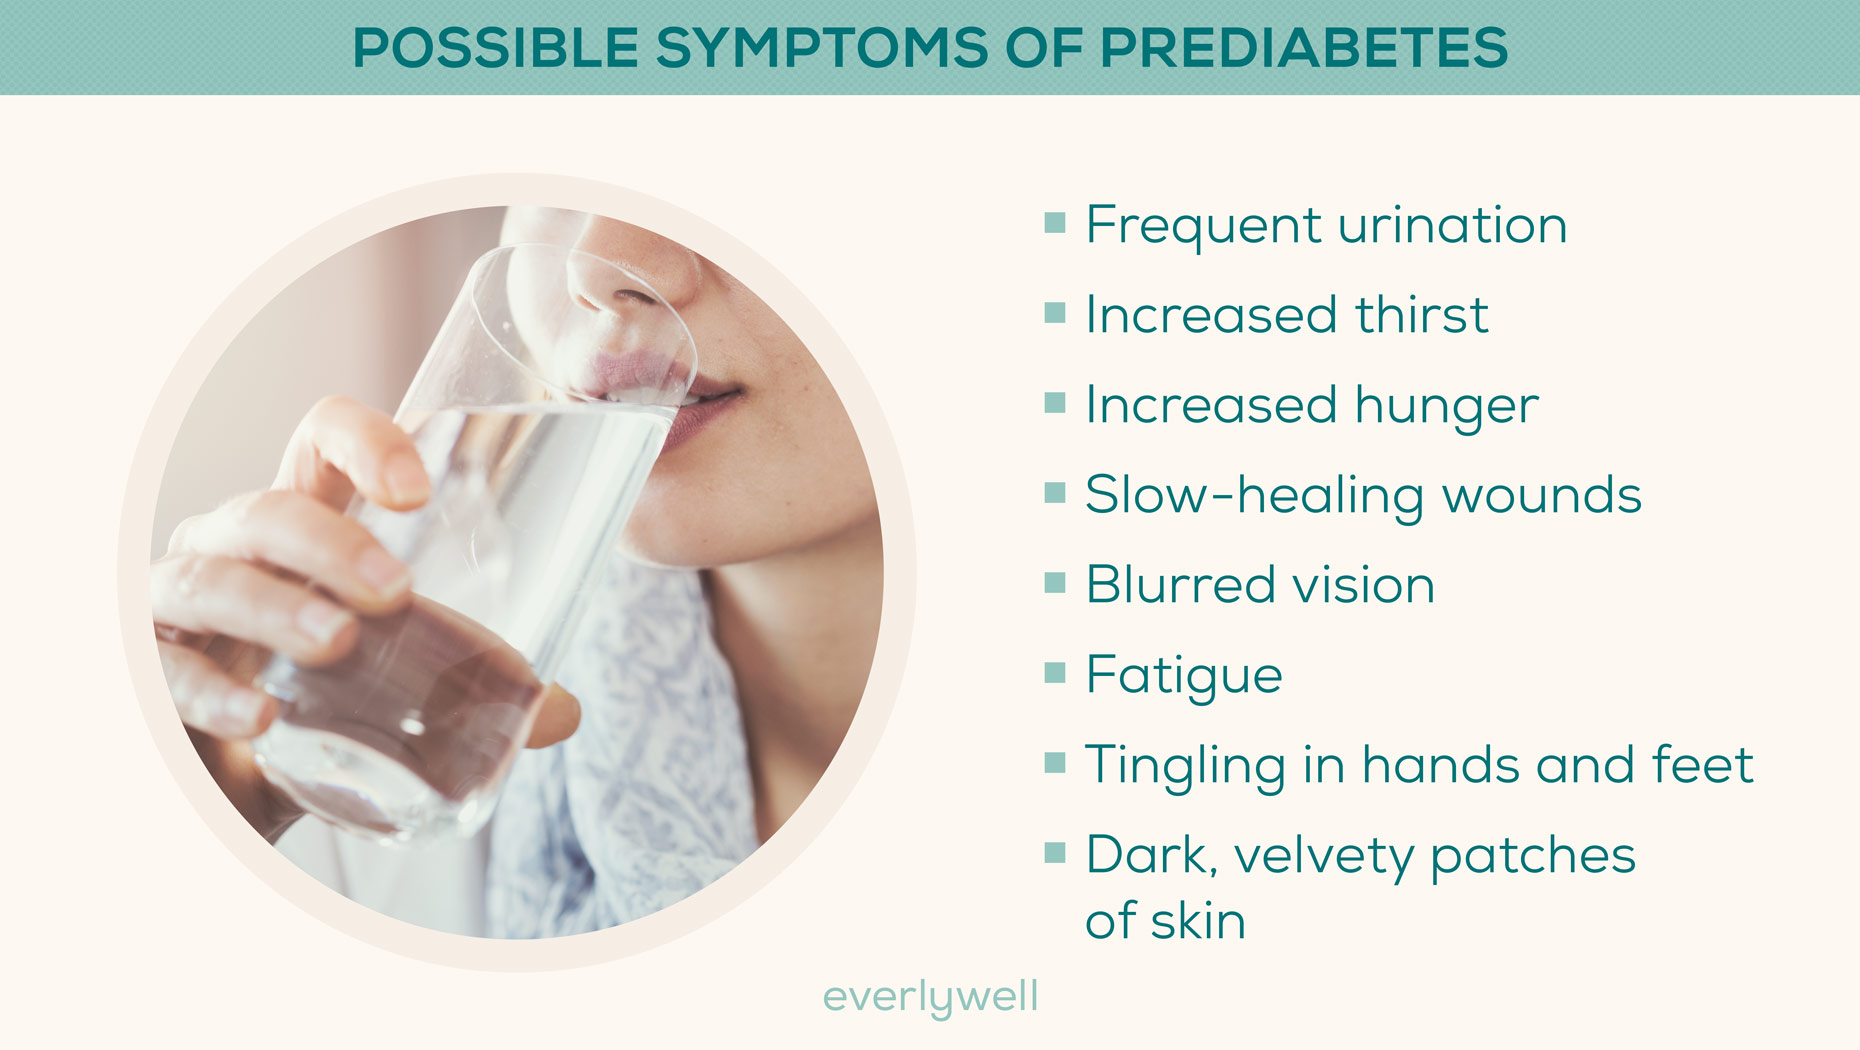 Prediabetes symptoms